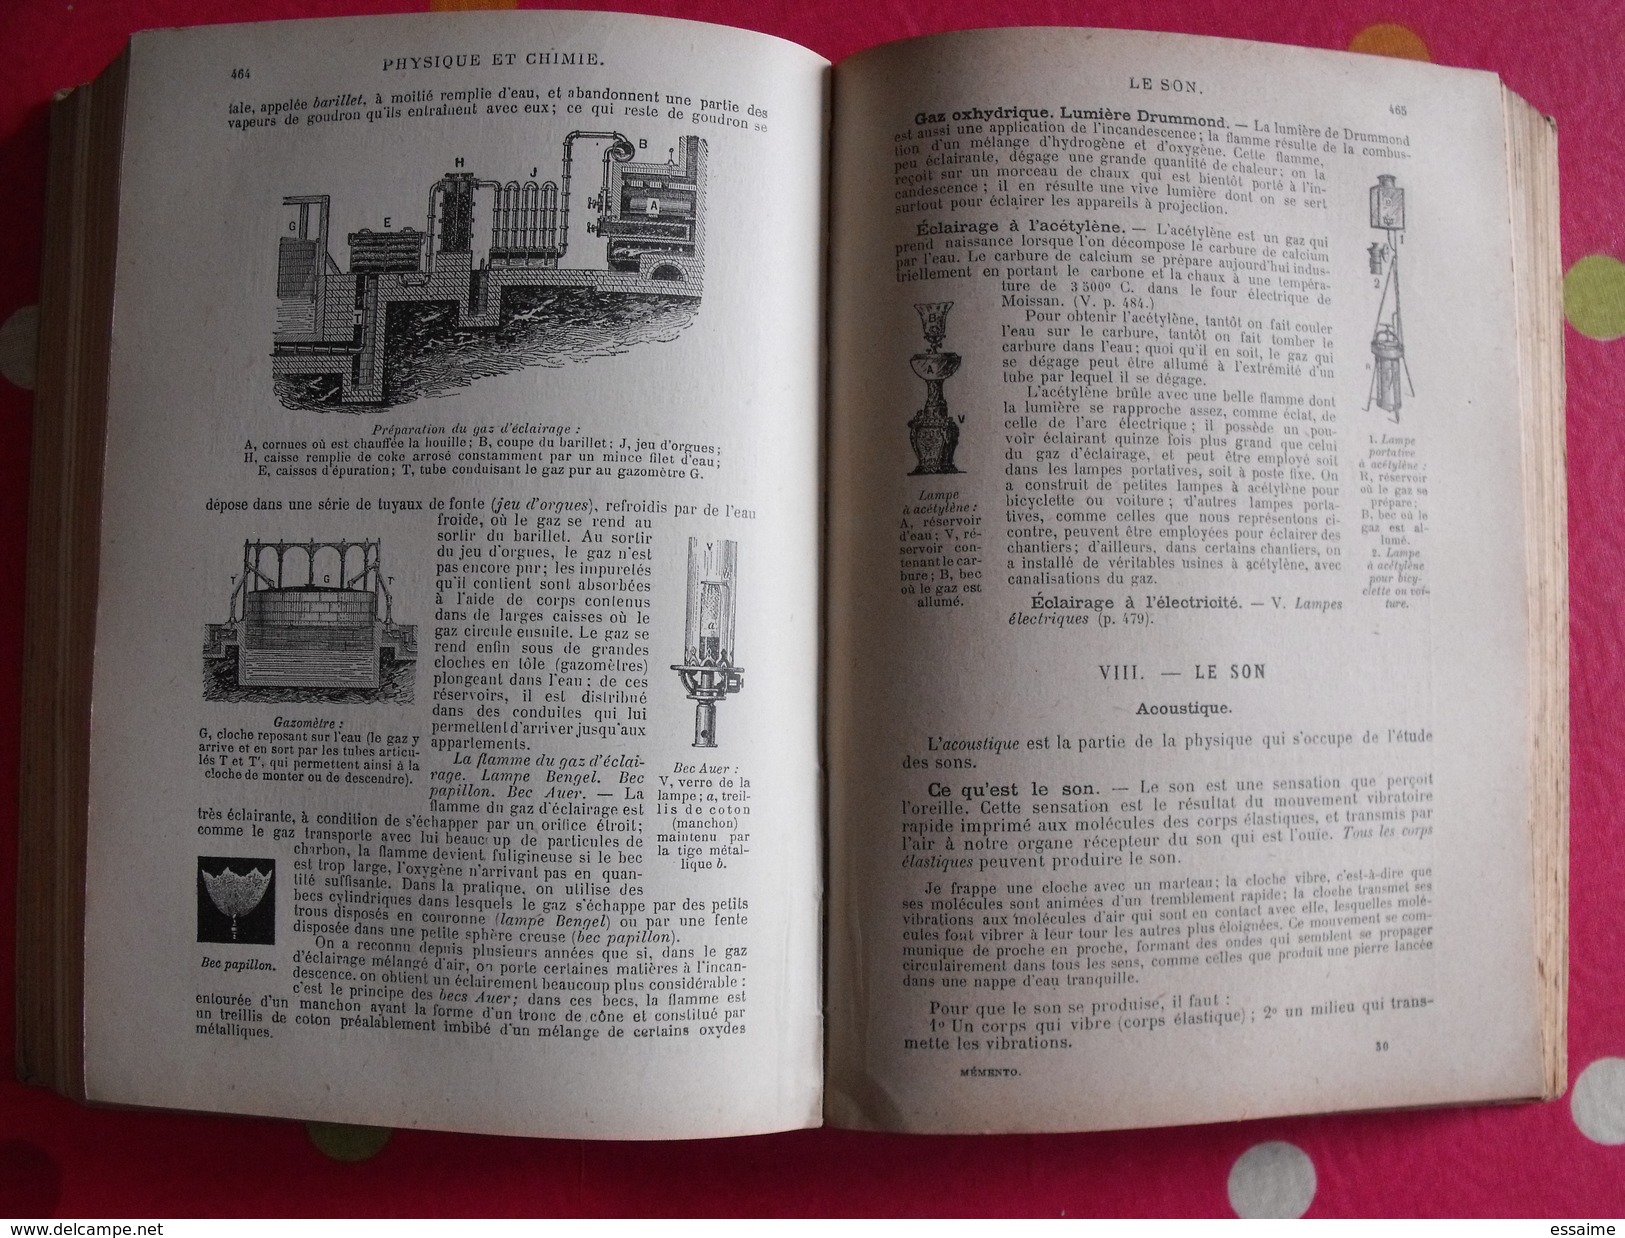 Memento larousse encyclopédique et illustré. 20 ouvrages en un seul. 1918